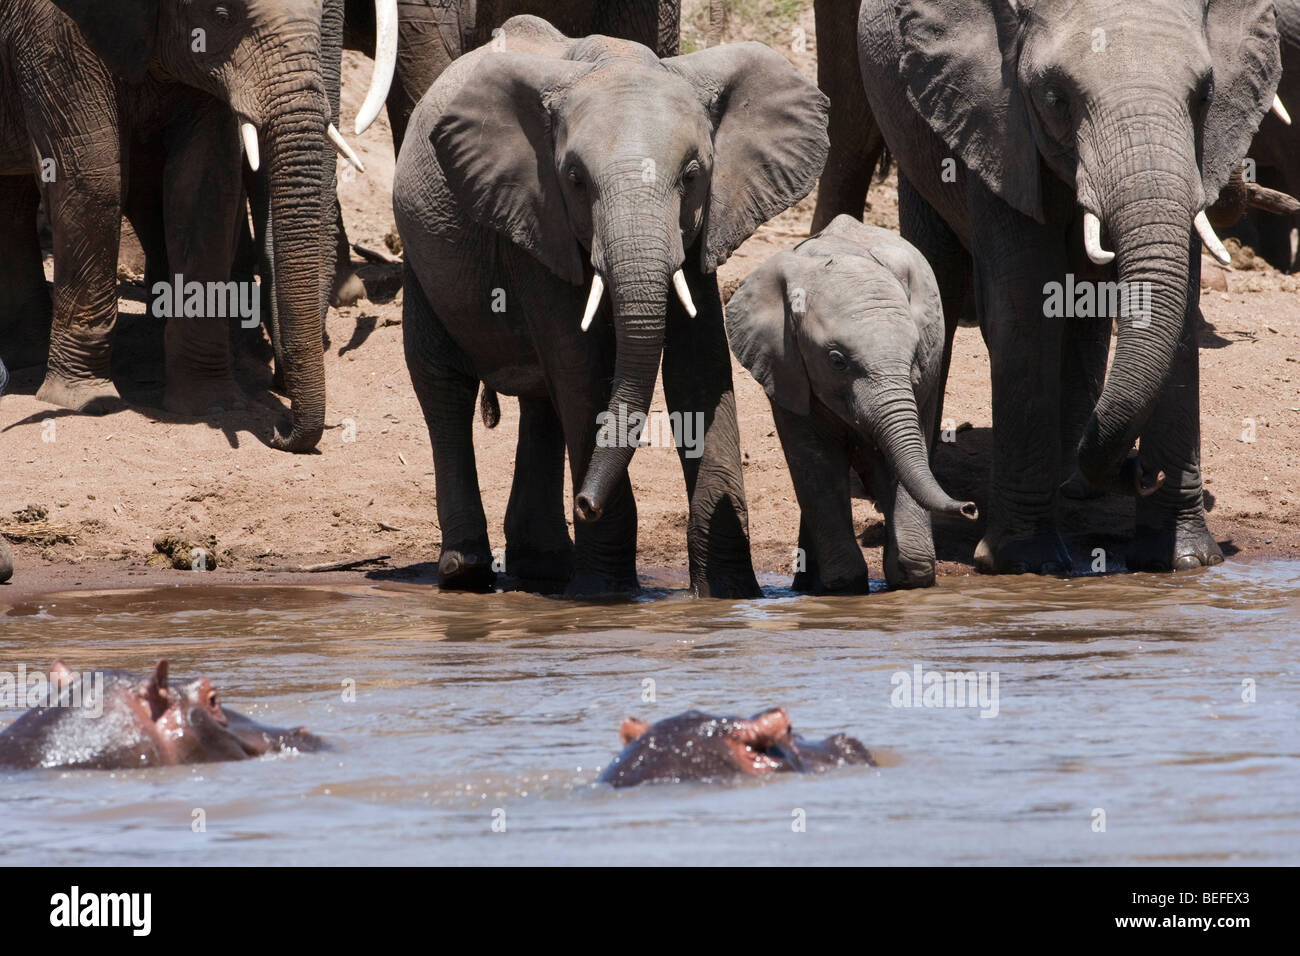 Stand off presso il river una mandria di Elefanti e ippopotami, la madre e il bambino vitello schierate in riverbank curiosamente guardare 2 sommerso ippopotami capi al di fuori dell'acqua Foto Stock